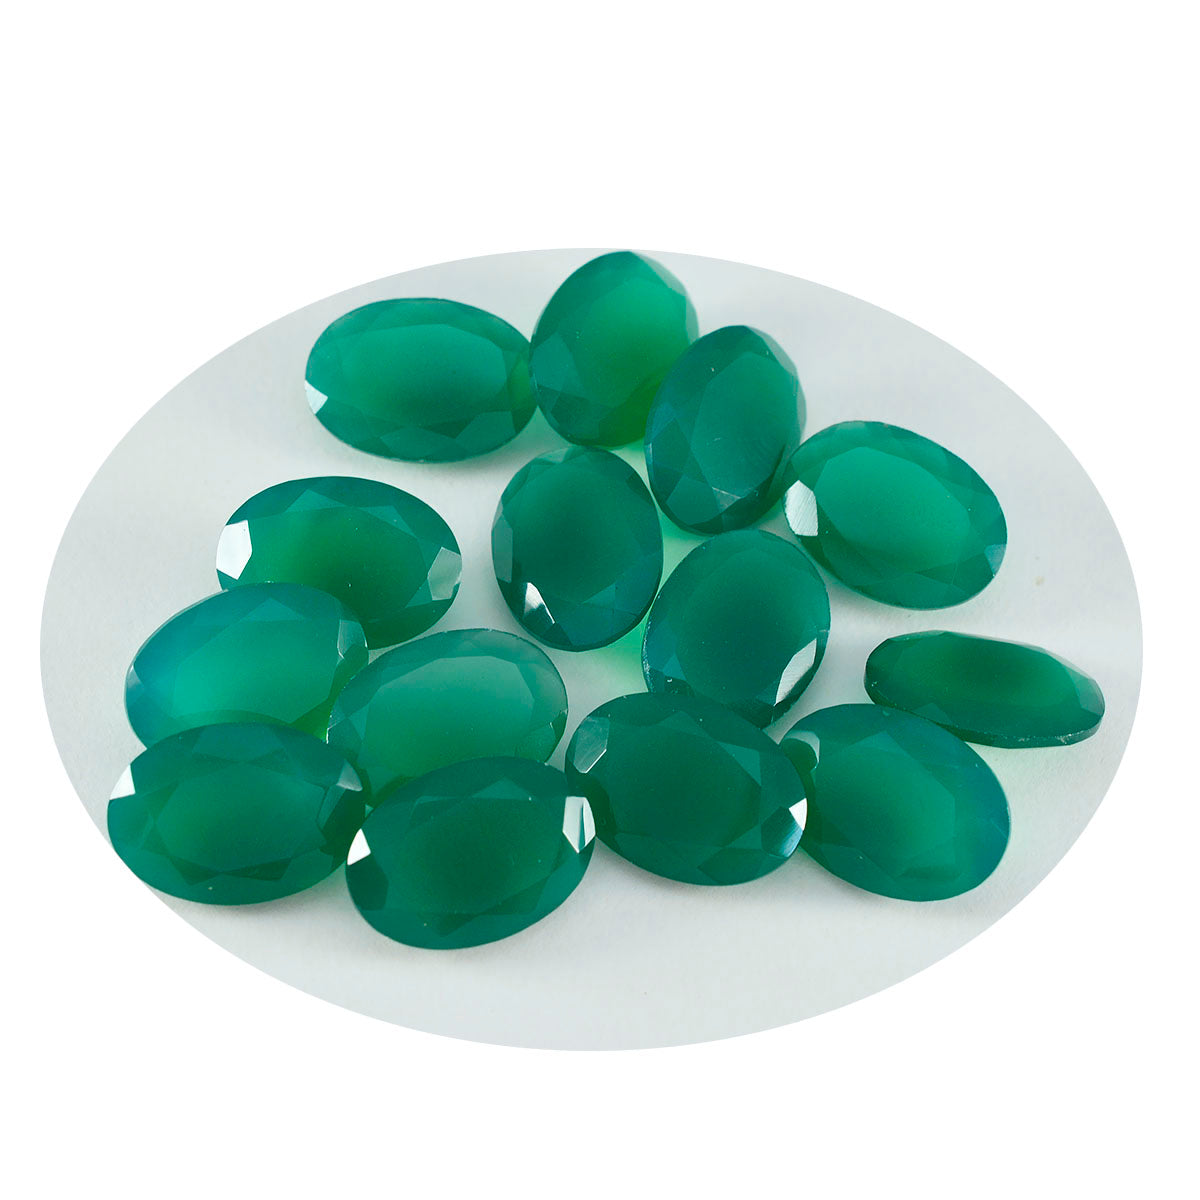 Riyogems 1 pieza de ónix verde auténtico facetado 7x9mm forma ovalada gema de buena calidad